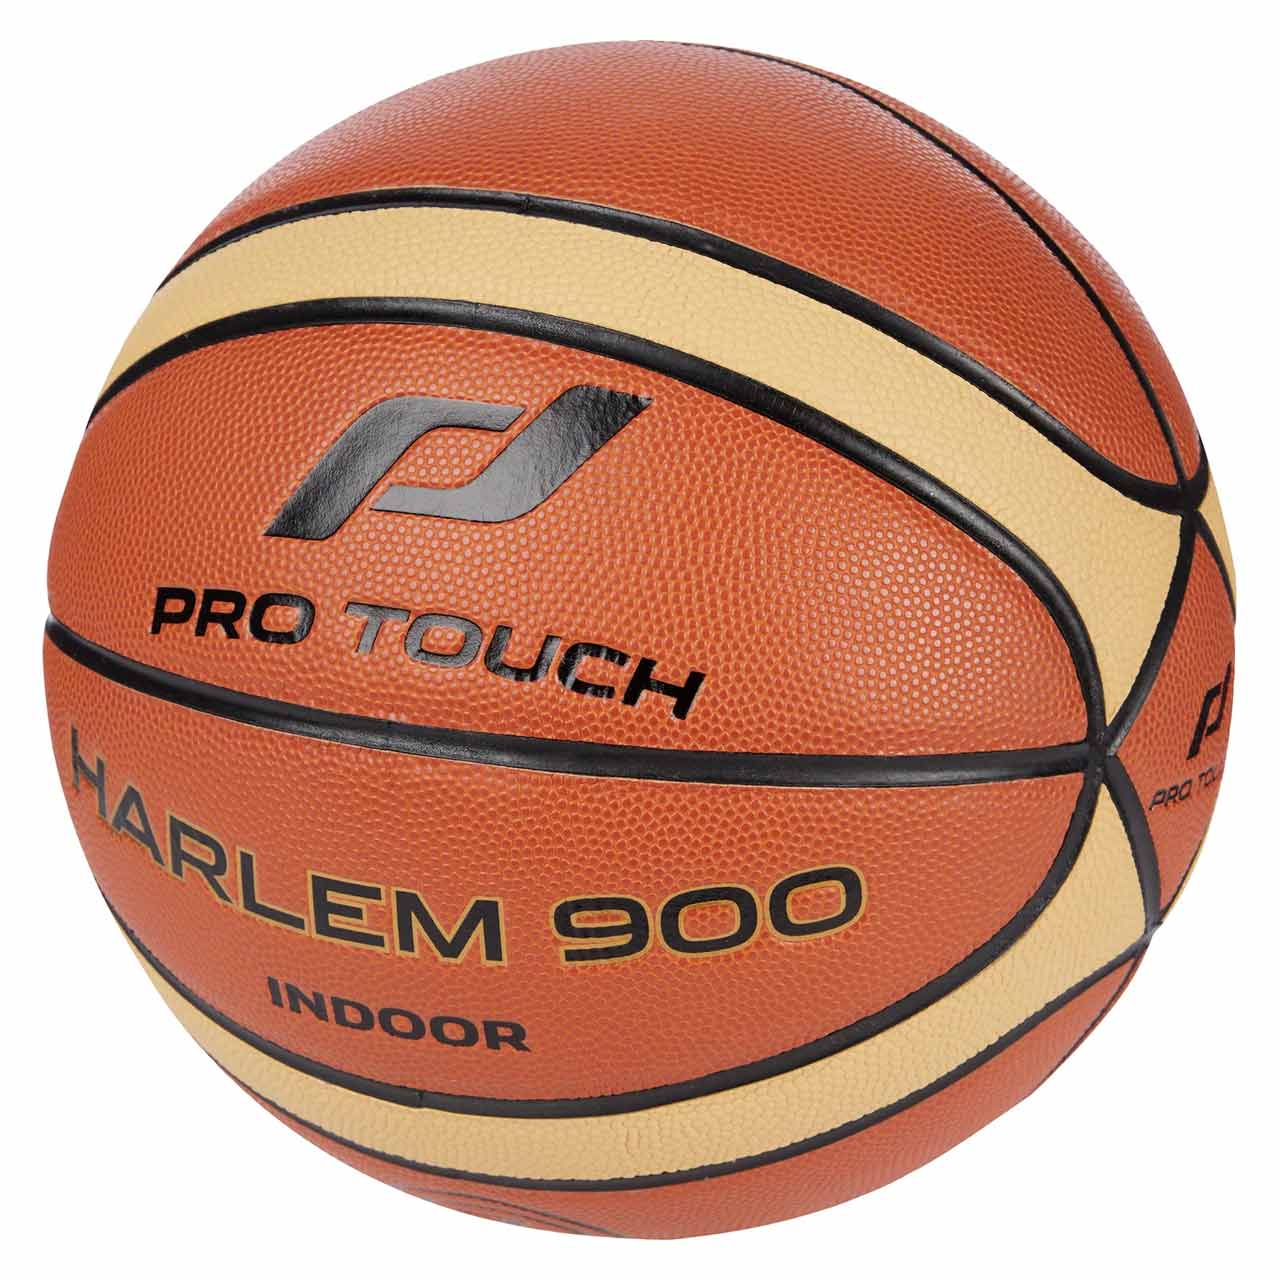 Basketball Harlem 900